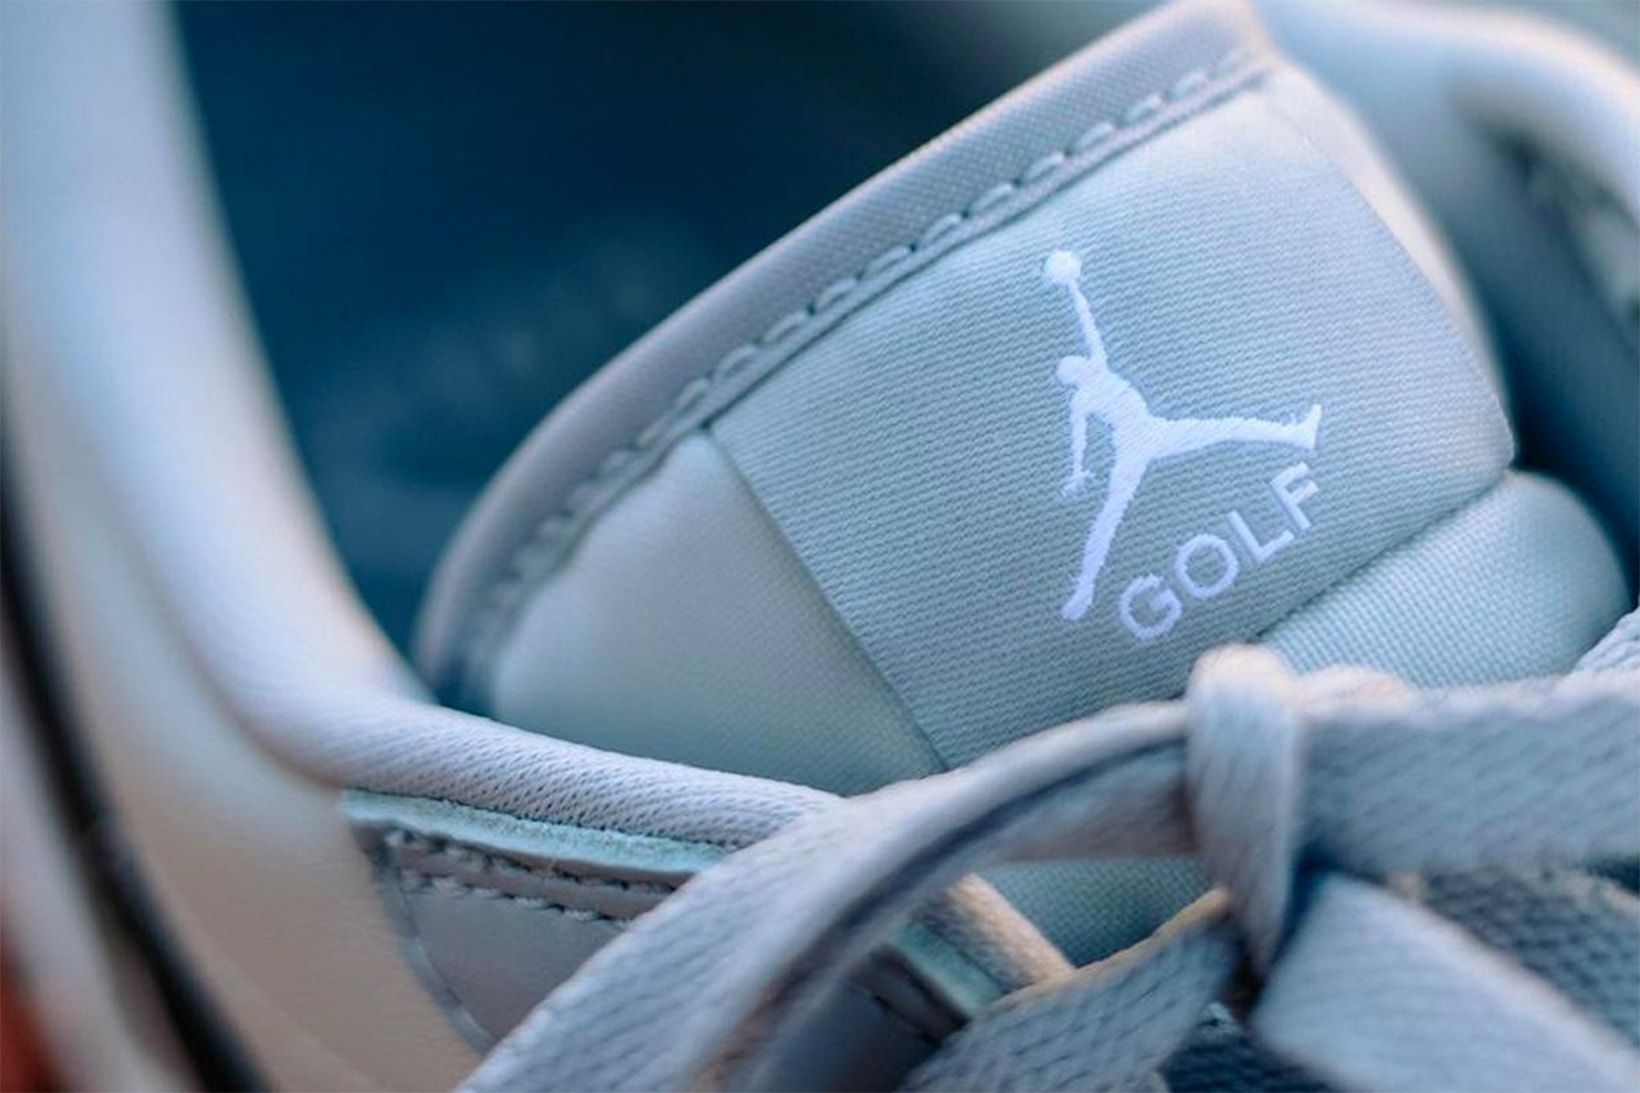 Nike Air Jordan 1 Low Golf Sneakers "Wolf Grey" Michael Jordan Tongue Tab Branding